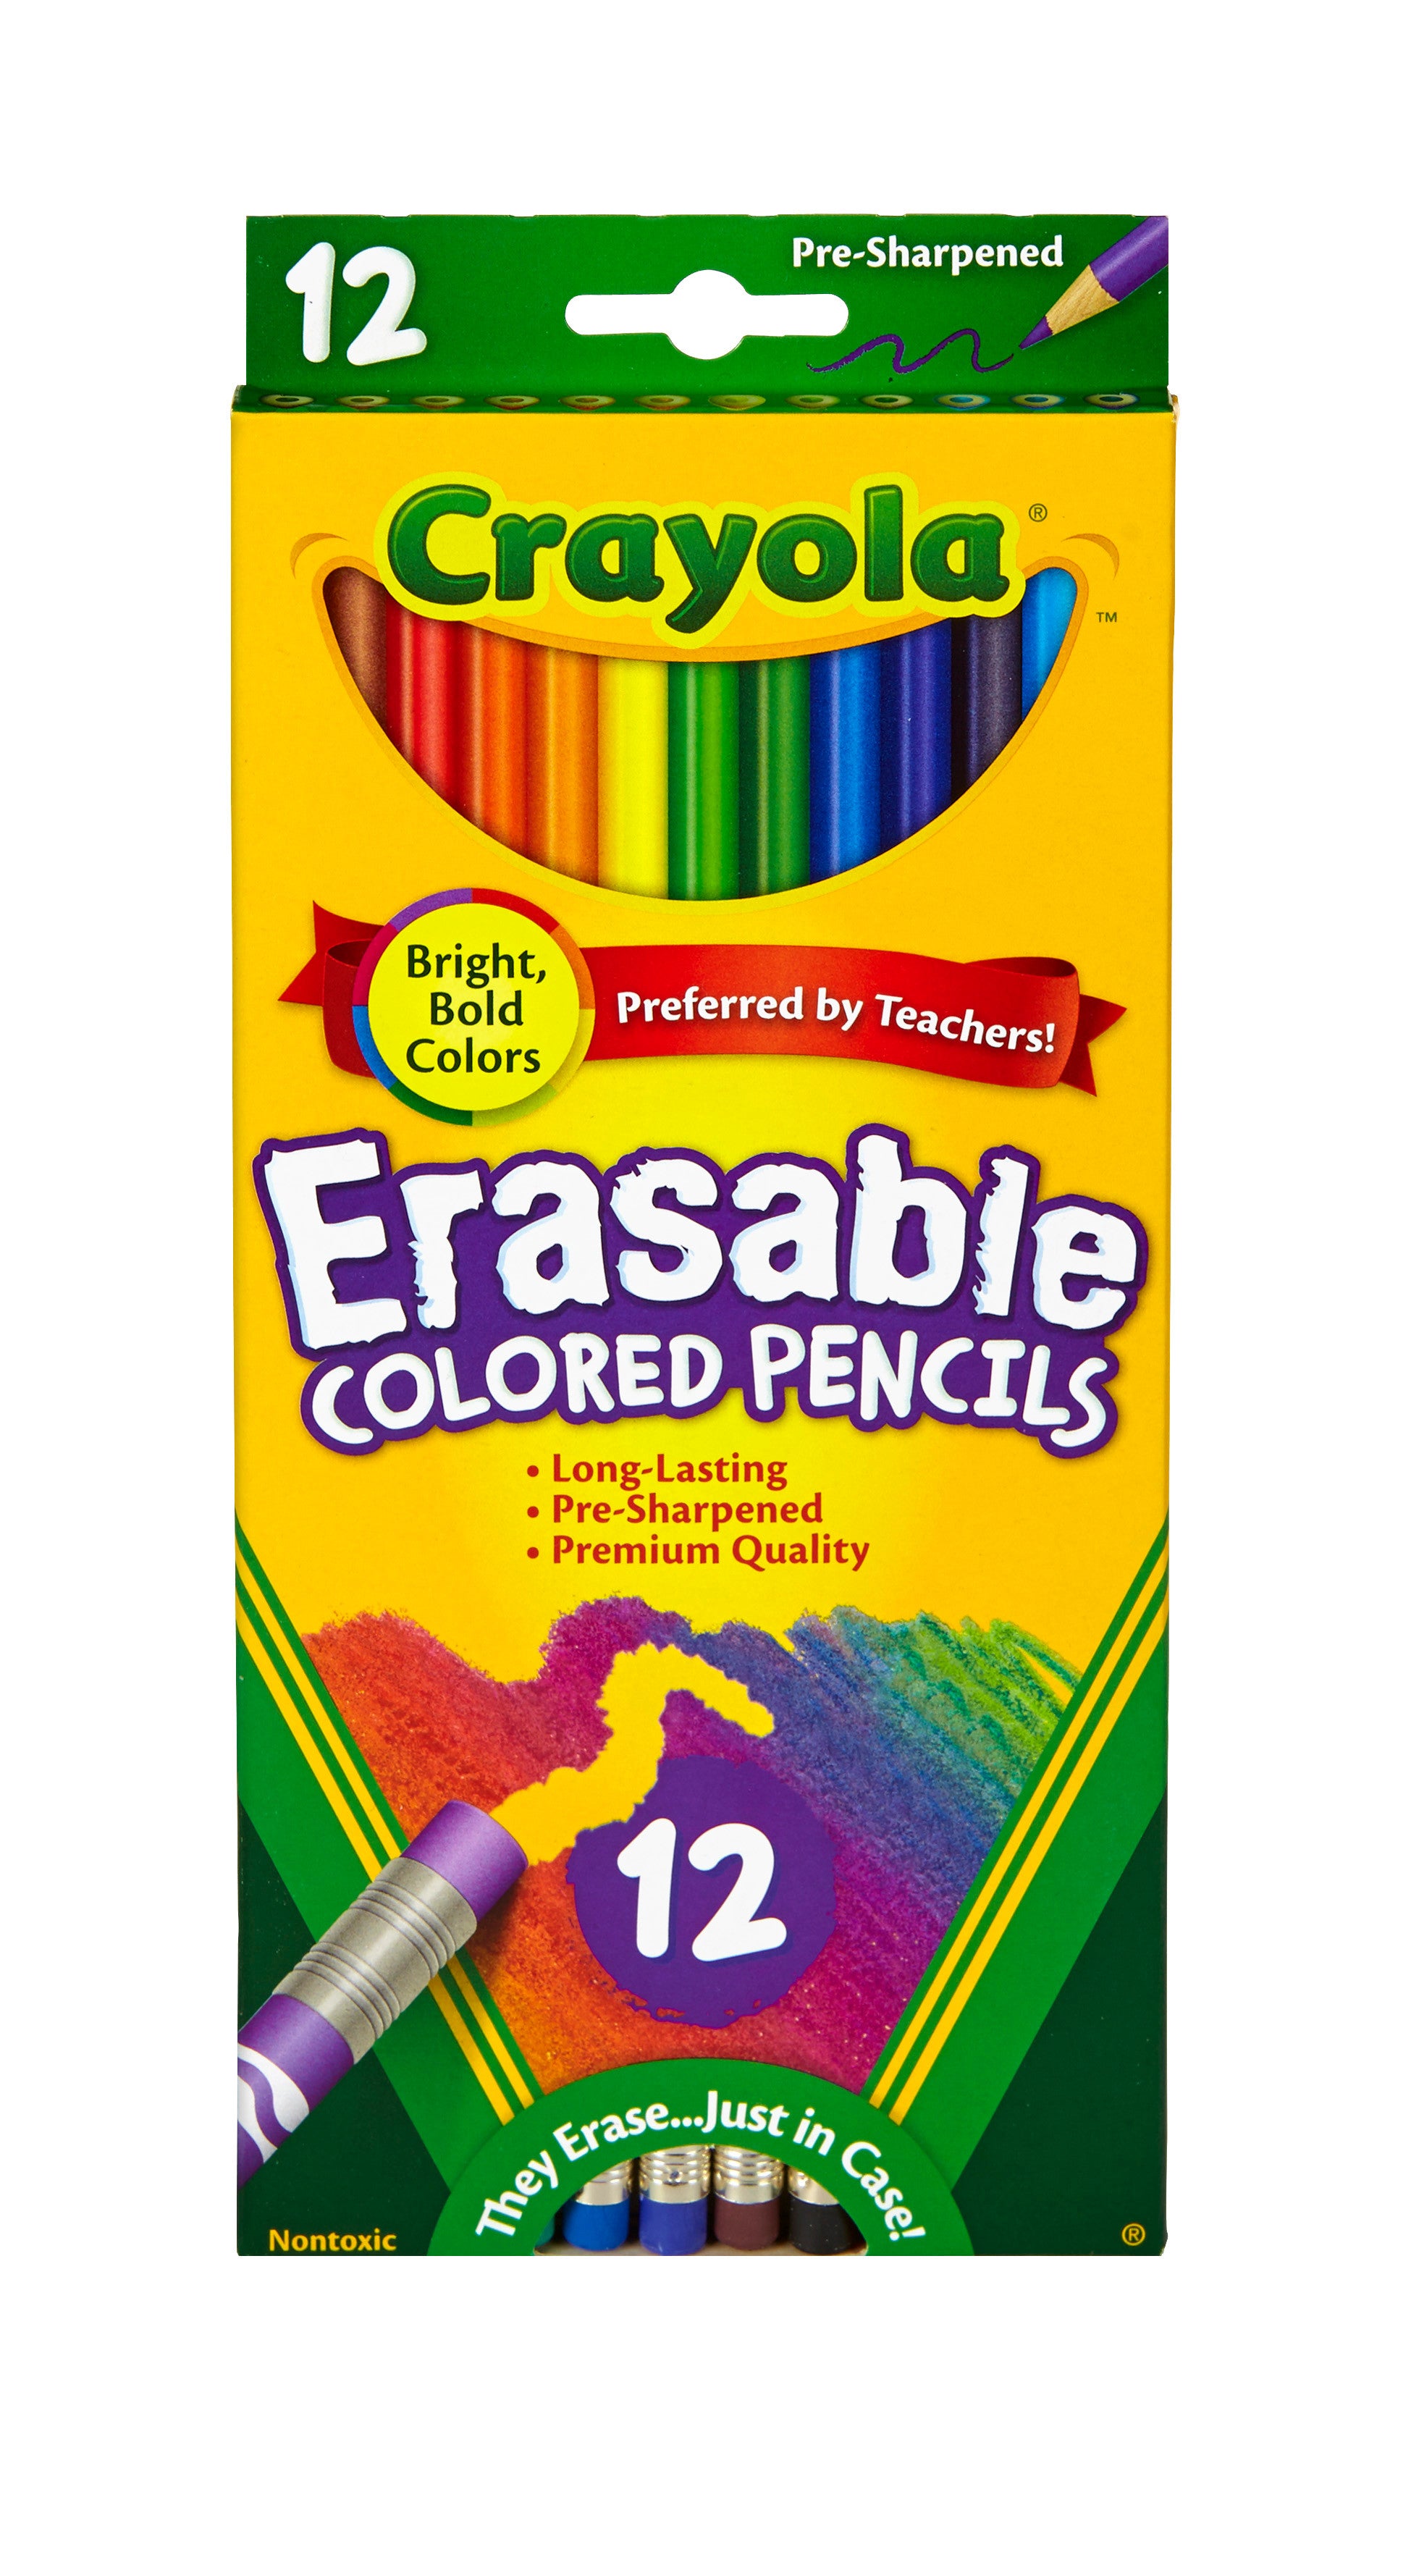 Crayola Erasable Colored Pencils - 12 Colors